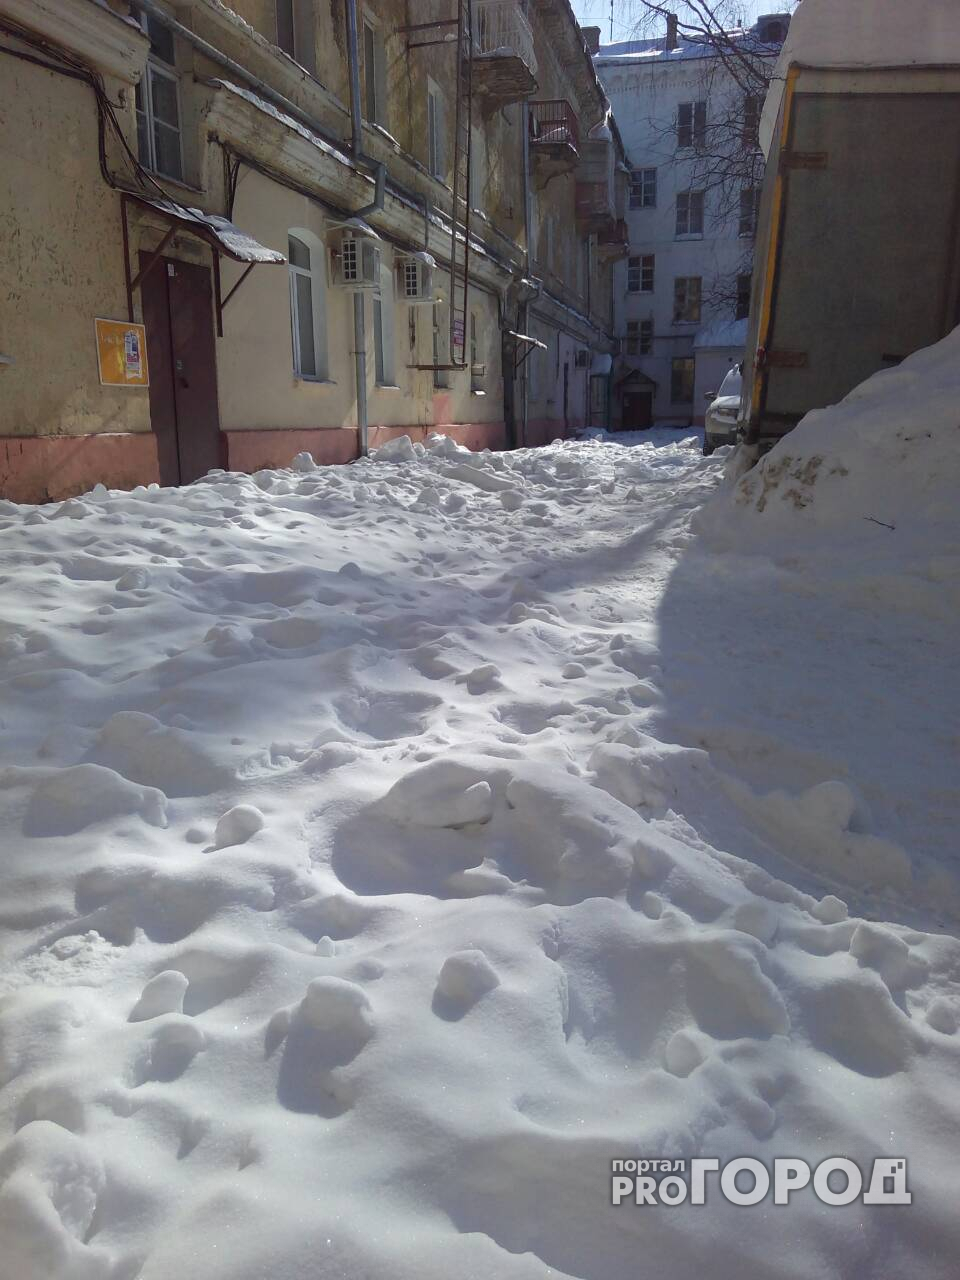 В Йошкар-Оле снег с крыши дома превратился в непролазные сугробы